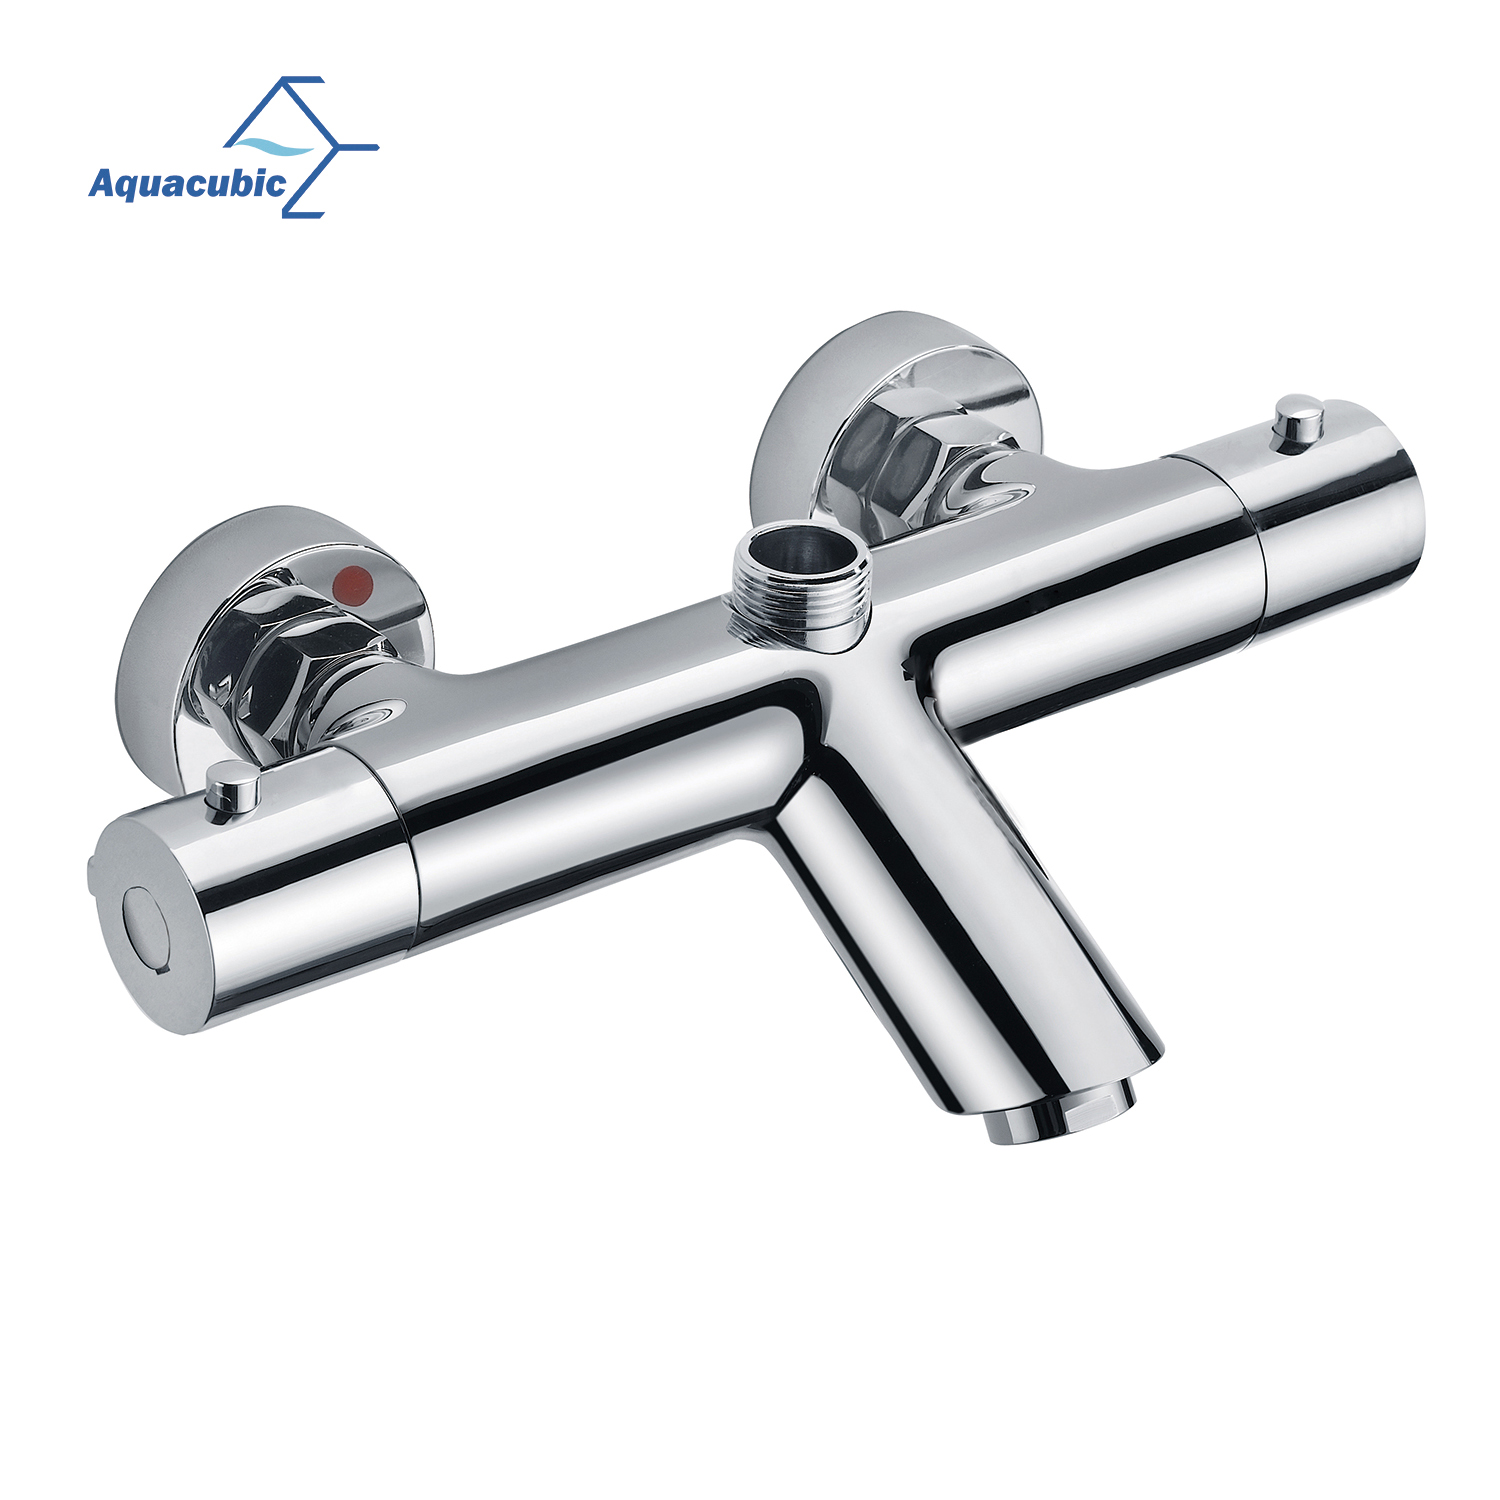 Válvula termostática para grifo de agua de baño y ducha Aquacubic WRAS cUPC, montaje en pared, con rosca NPT, estándar de EE. UU.